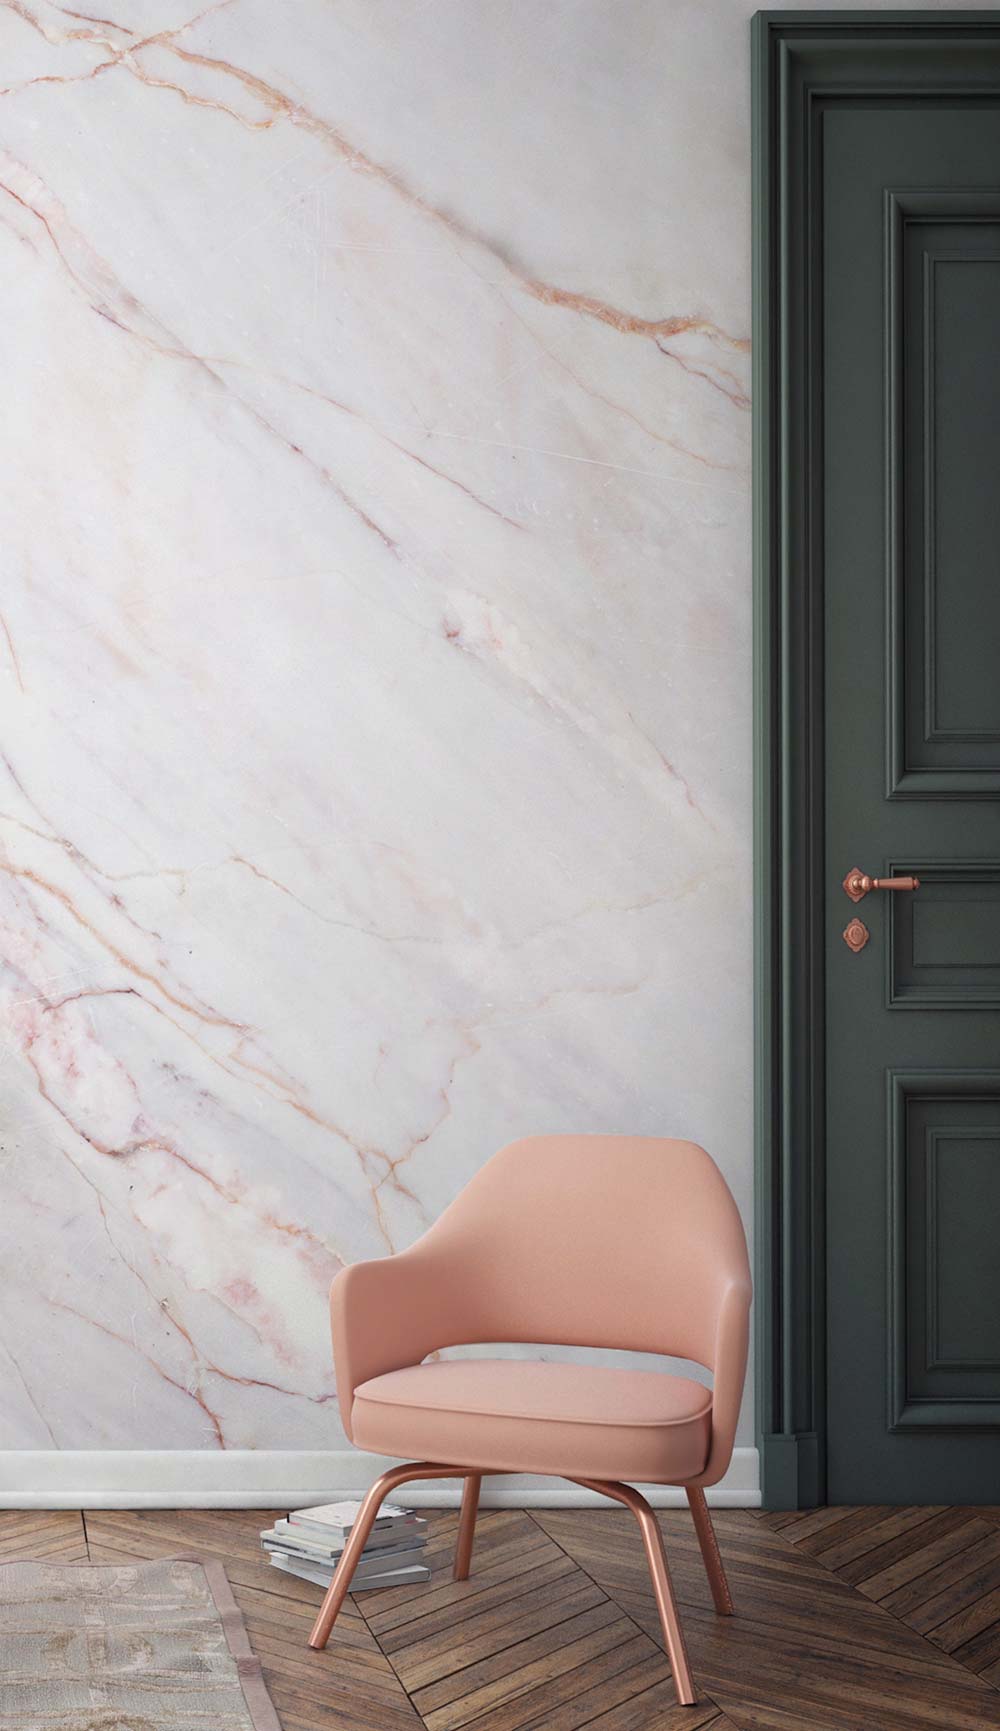 papel pintado de mármol para paredes,rosado,pared,silla,habitación,mueble